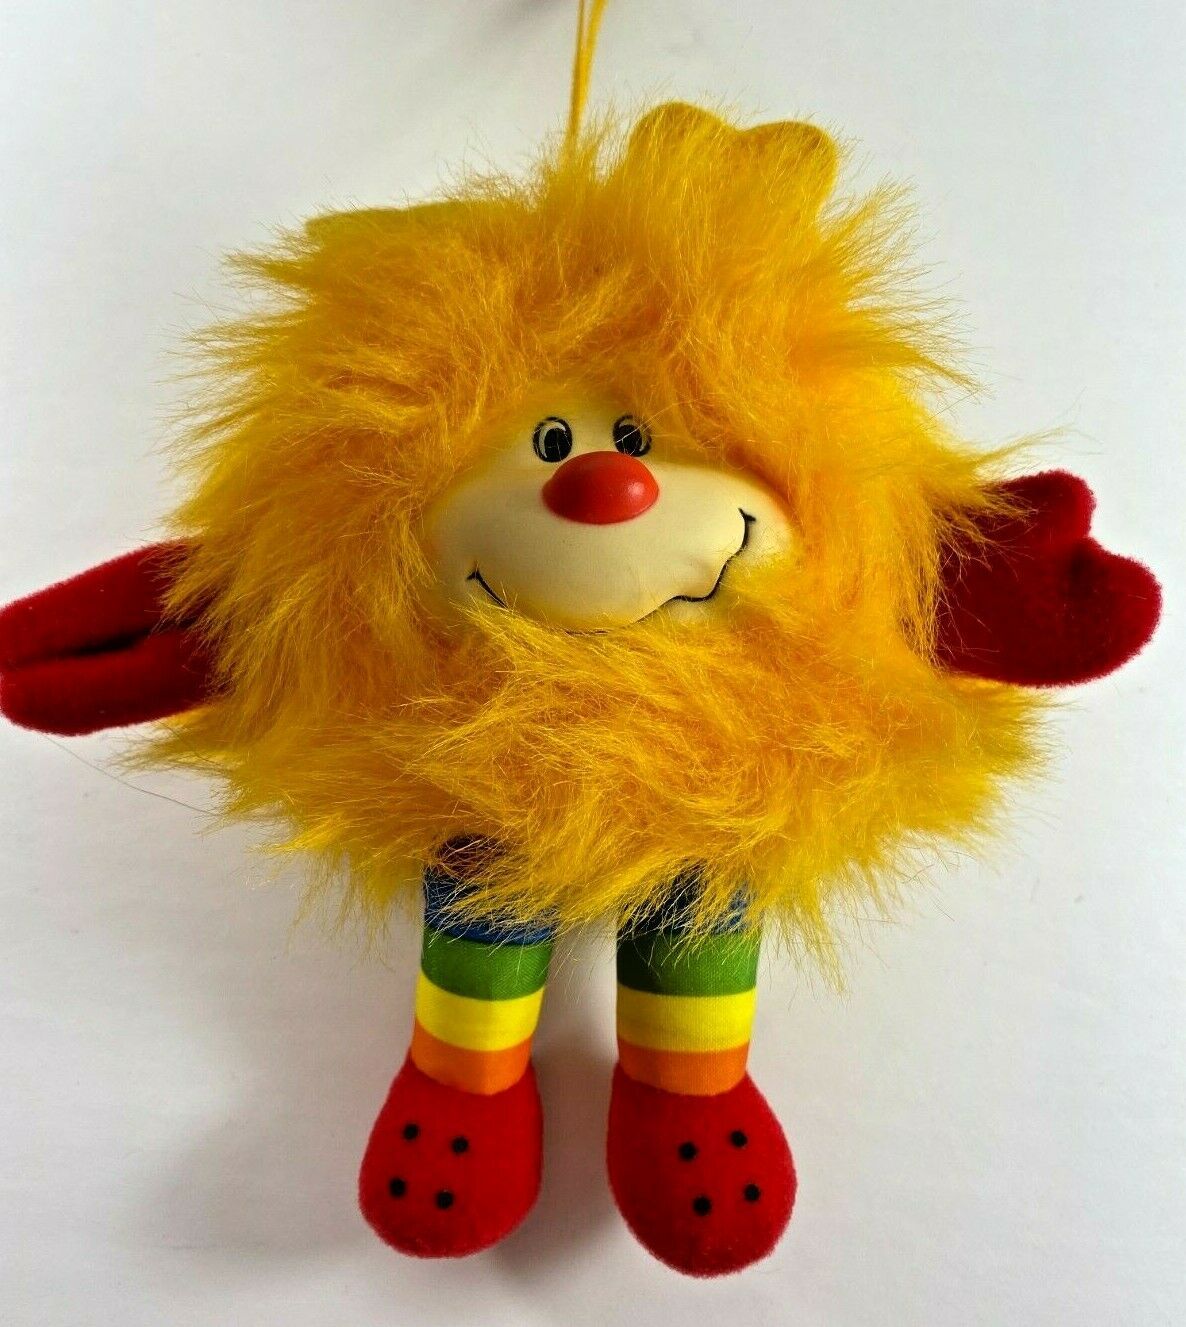 Vintage Hallmark 1983 Rainbow Brite Plush Sprite Twink Friend Toy Plush Stars